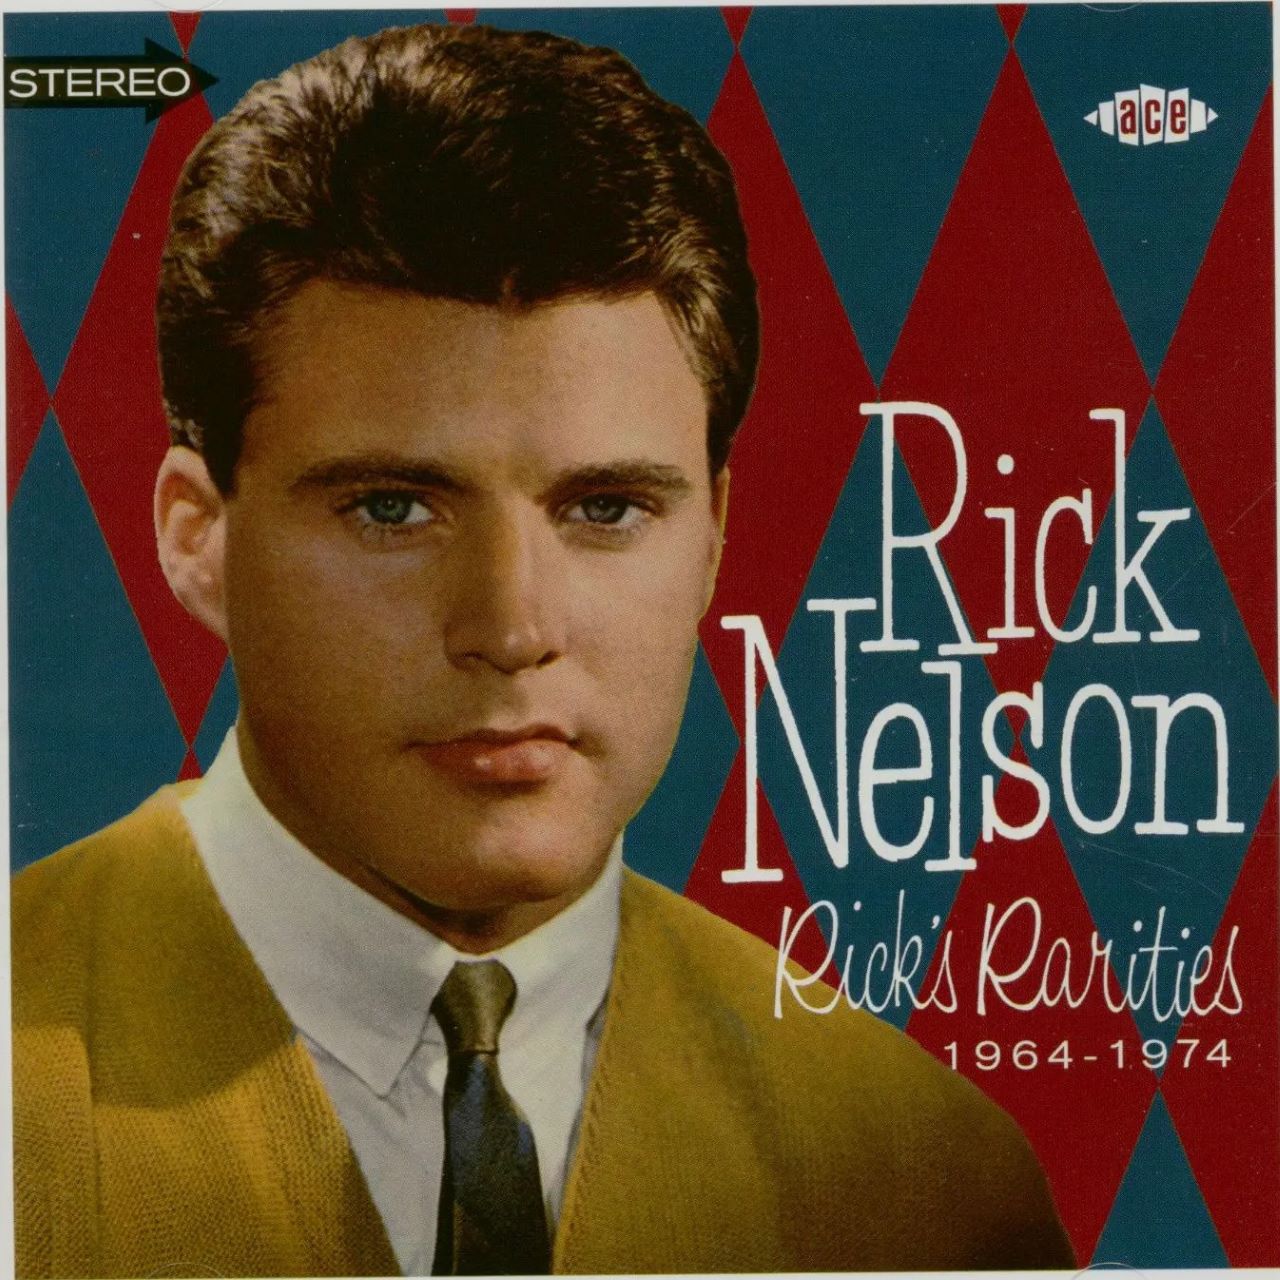 Rick Nelson - Rick's Rarities 1964-1974 cover album